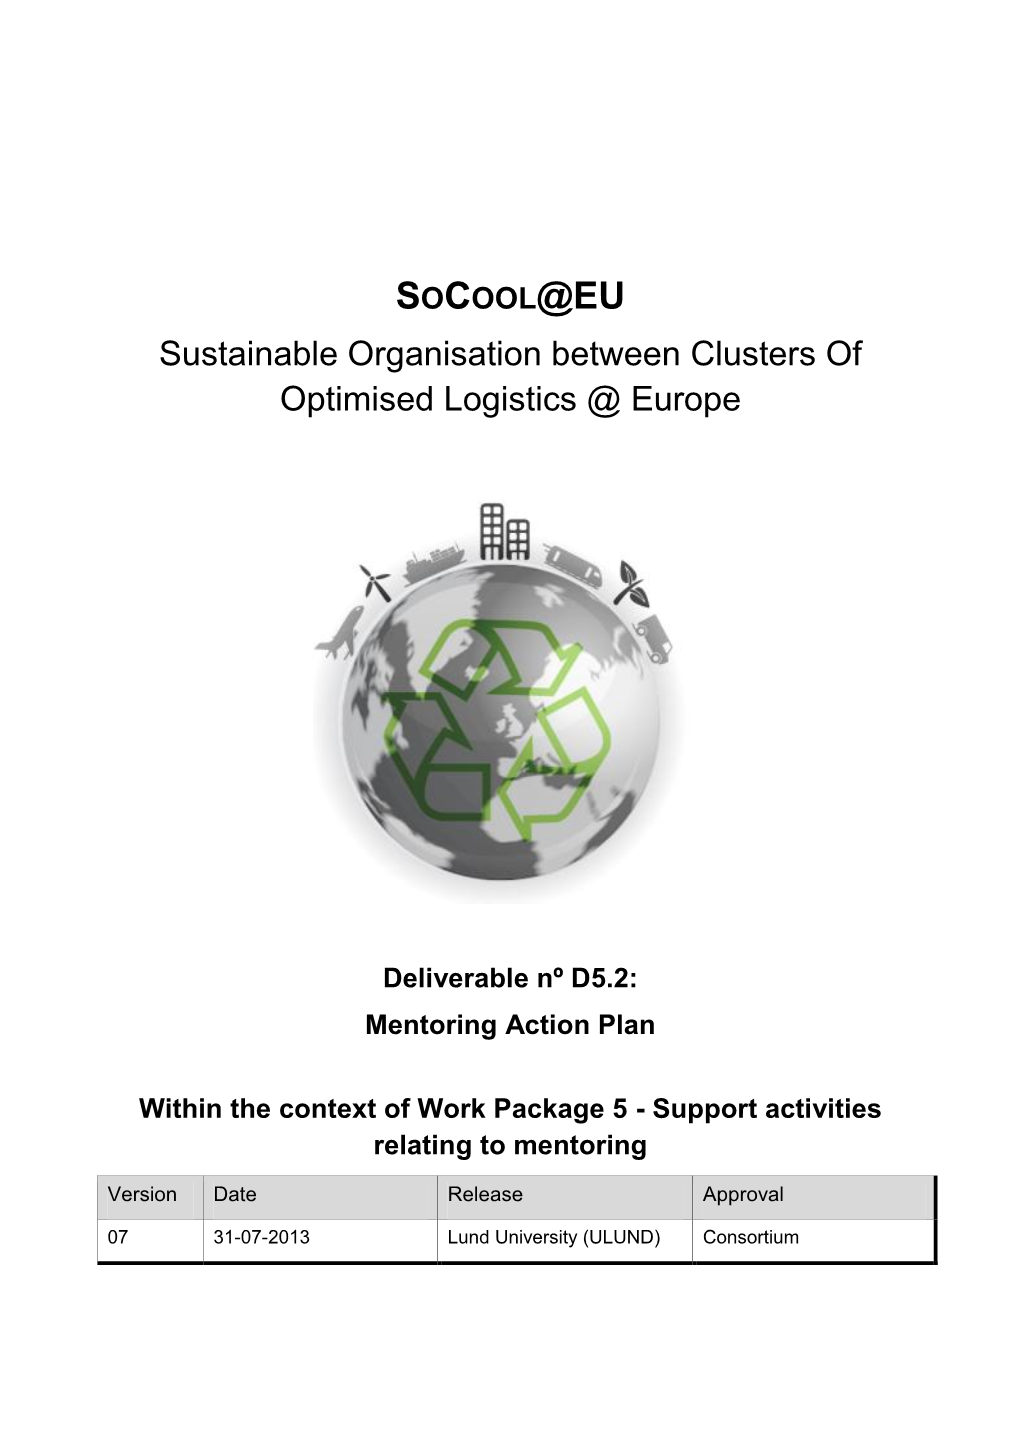 Socool@EU Mentoring Action Plan